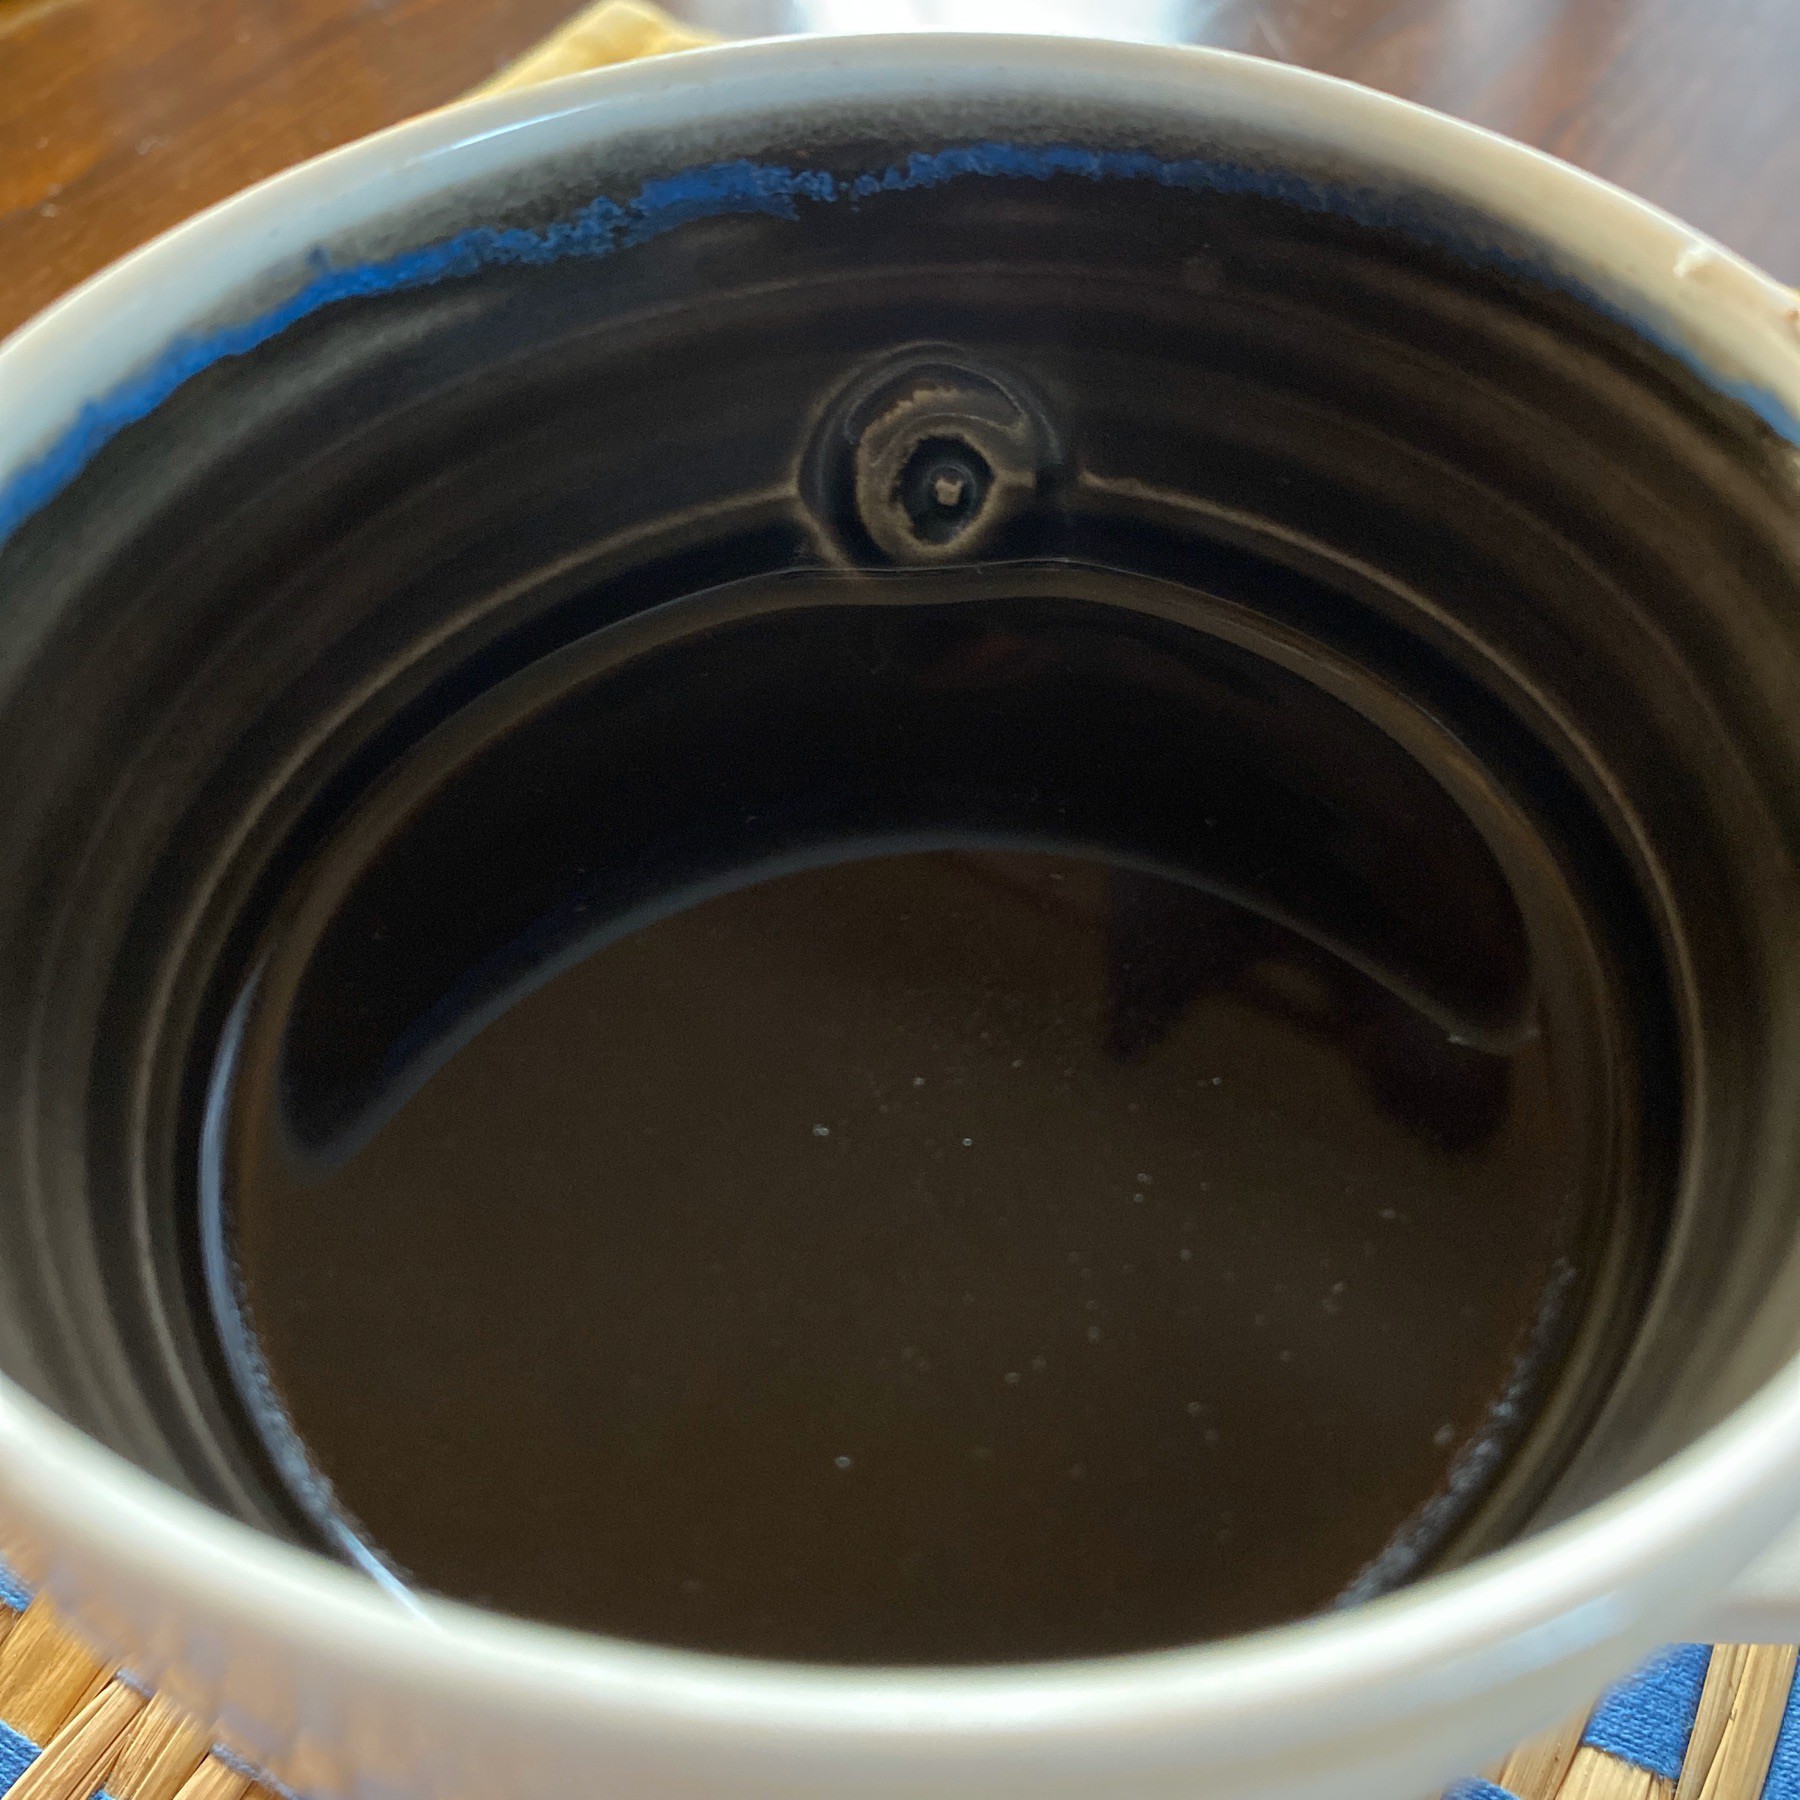 Coffee in mug.